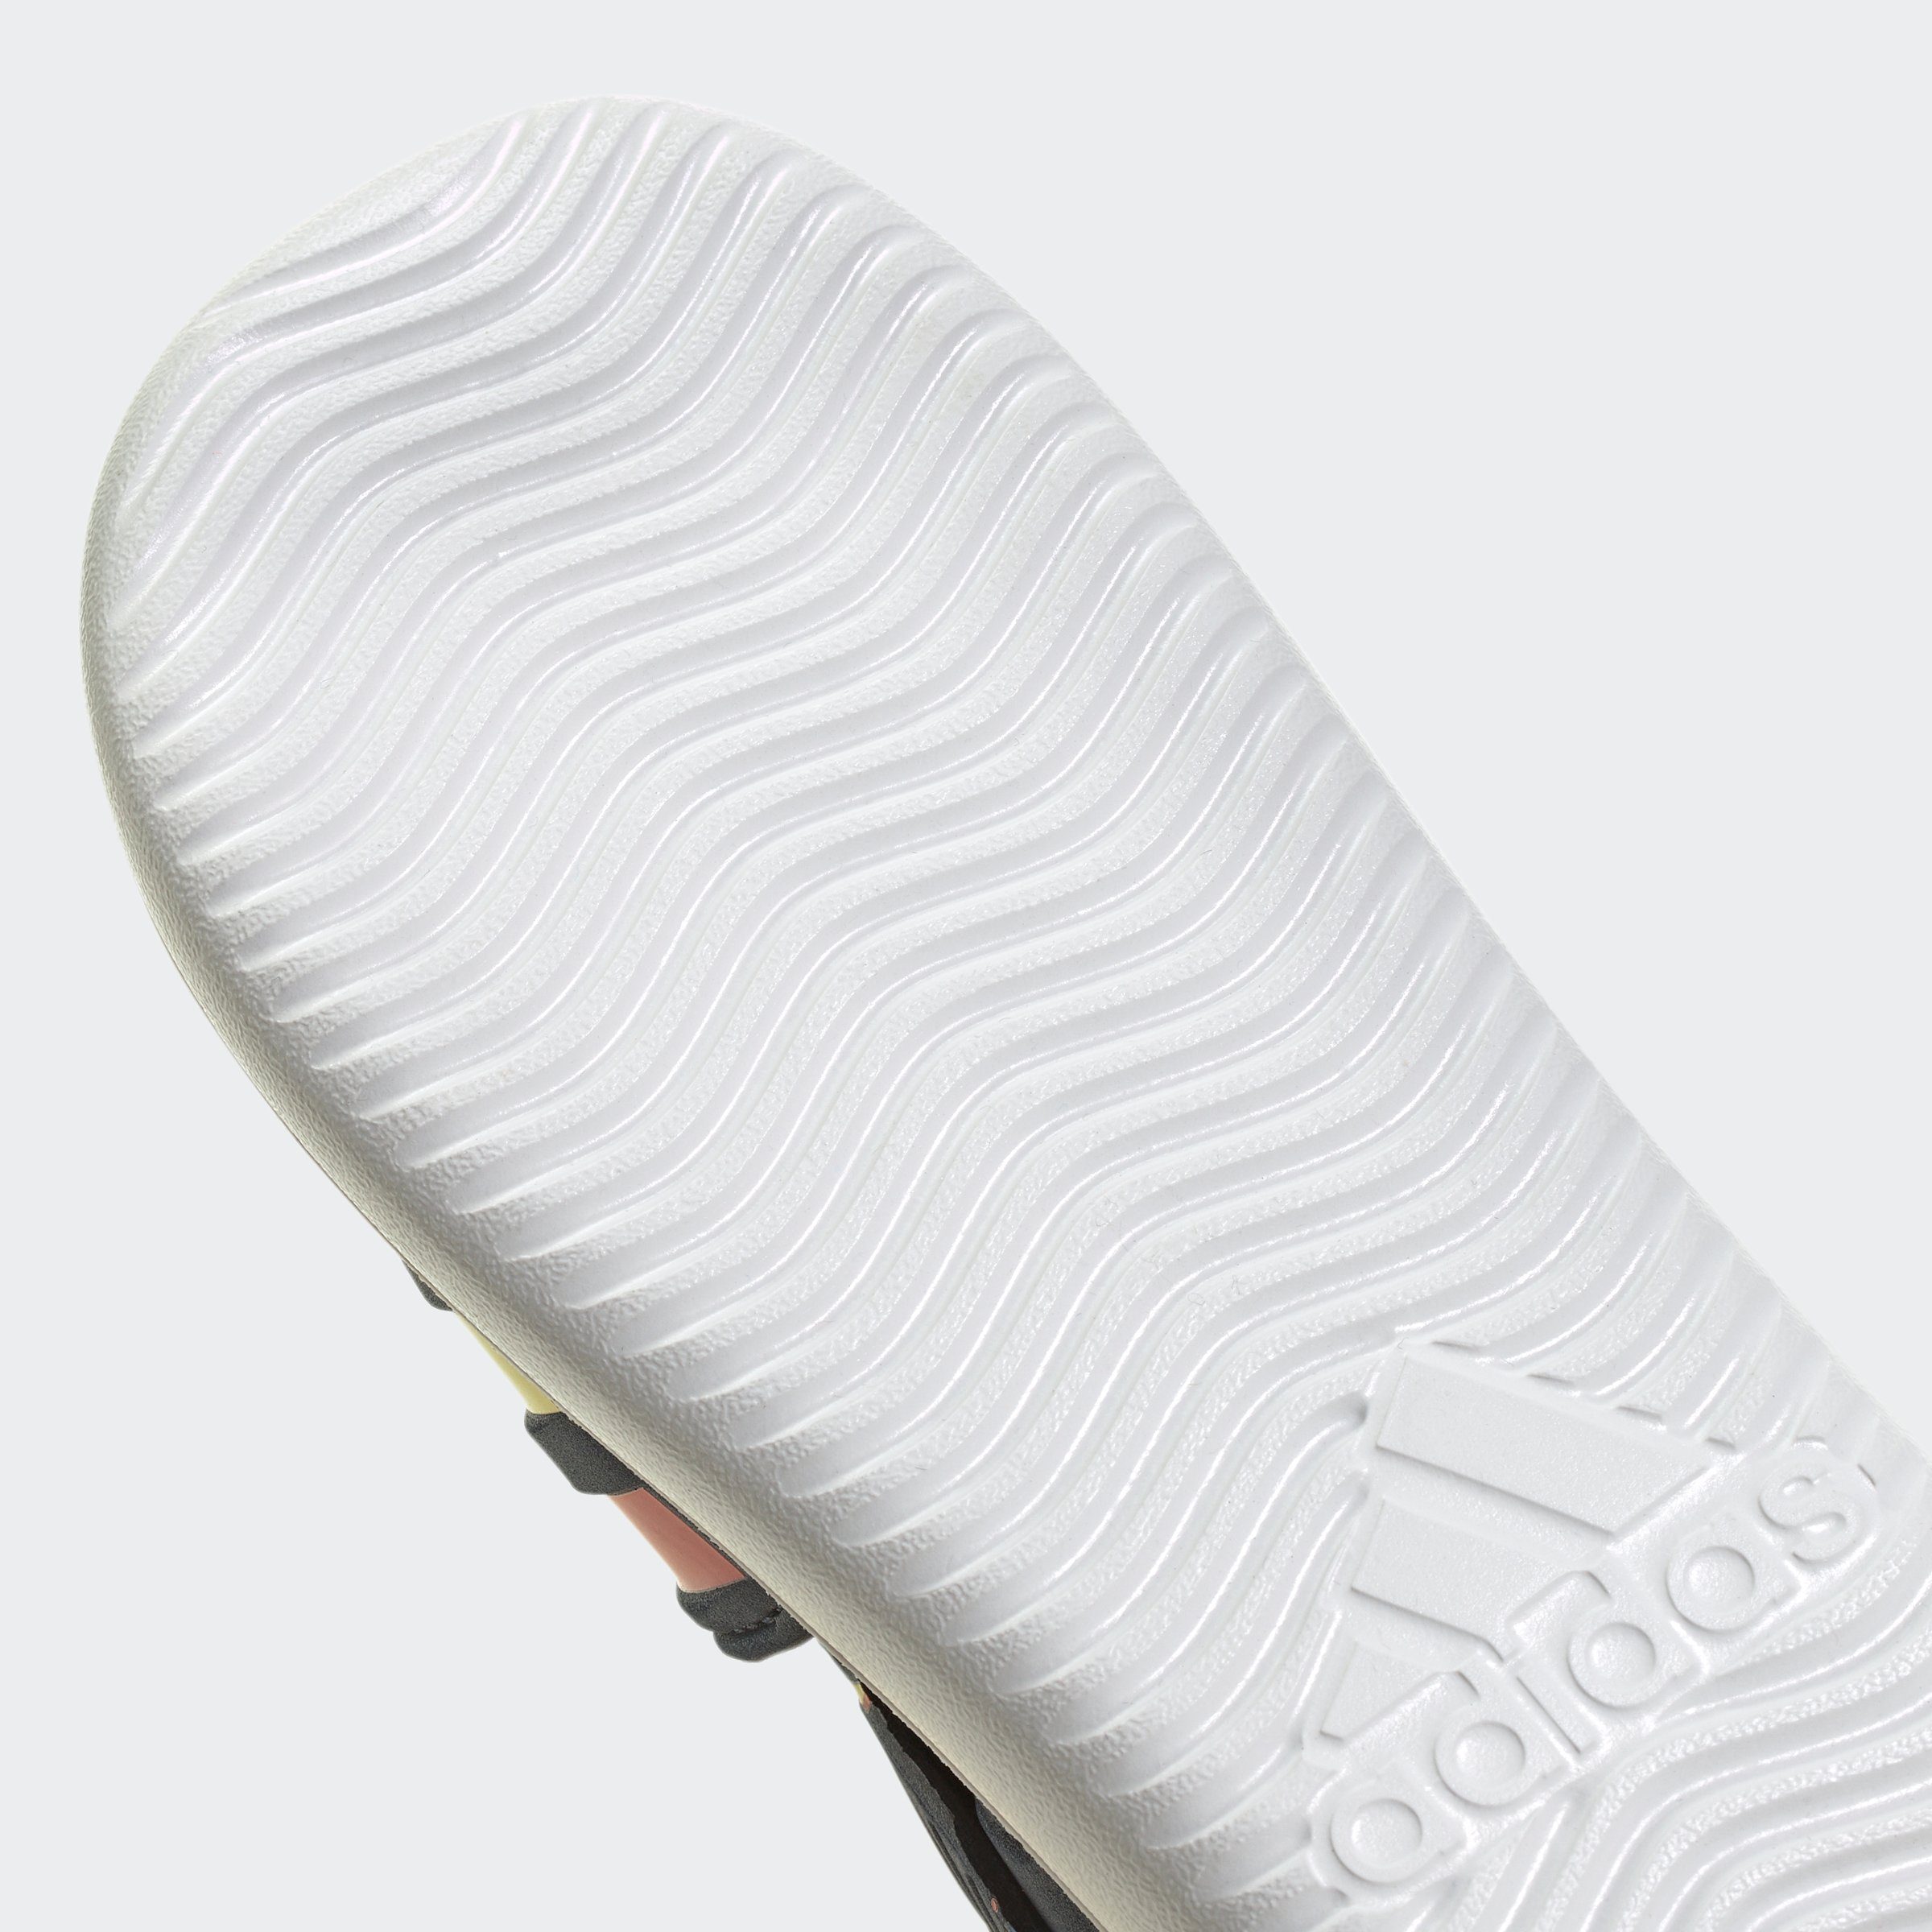 Sportswear adidas SUMMER WATER Klettverschluss mit CLOSED SANDALE Badesandale TOE